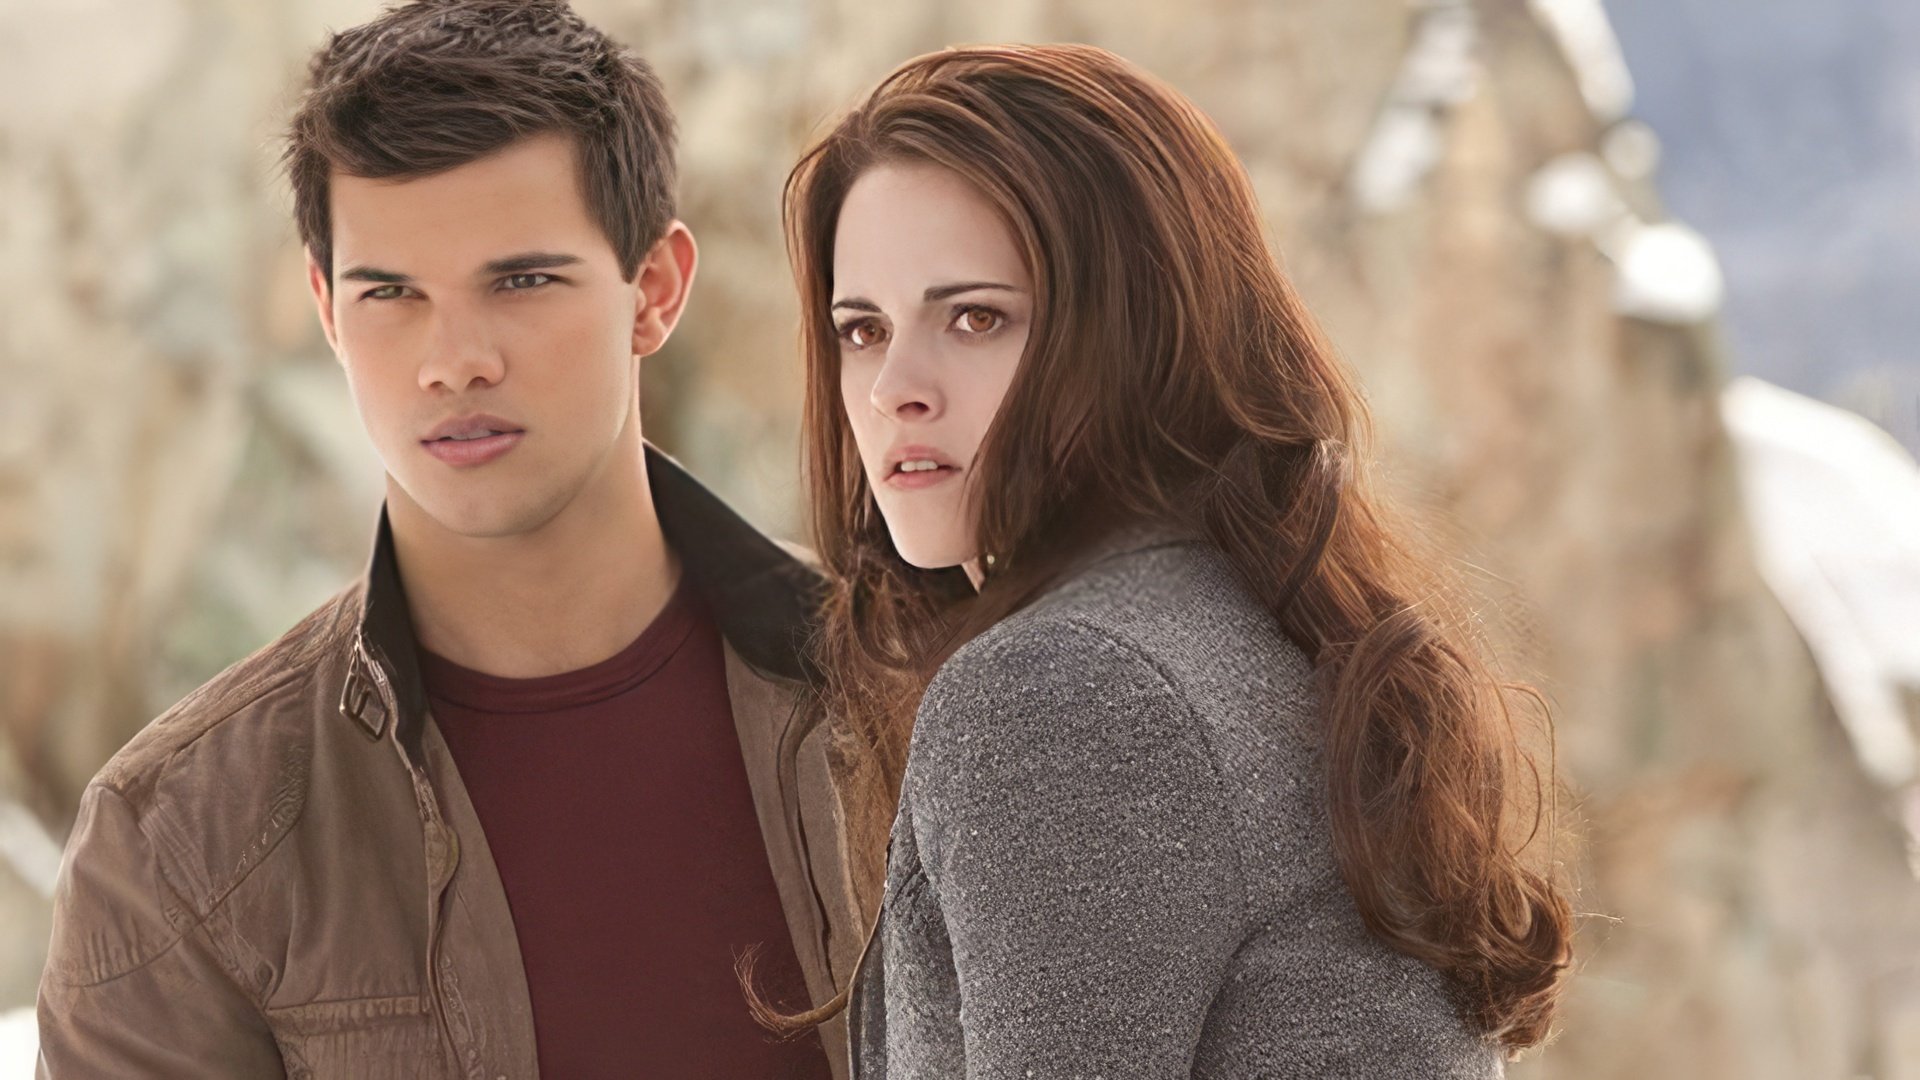 Taylor Lautner and Kristen Stewart in 'Twilight: Breaking Dawn - Part 2'